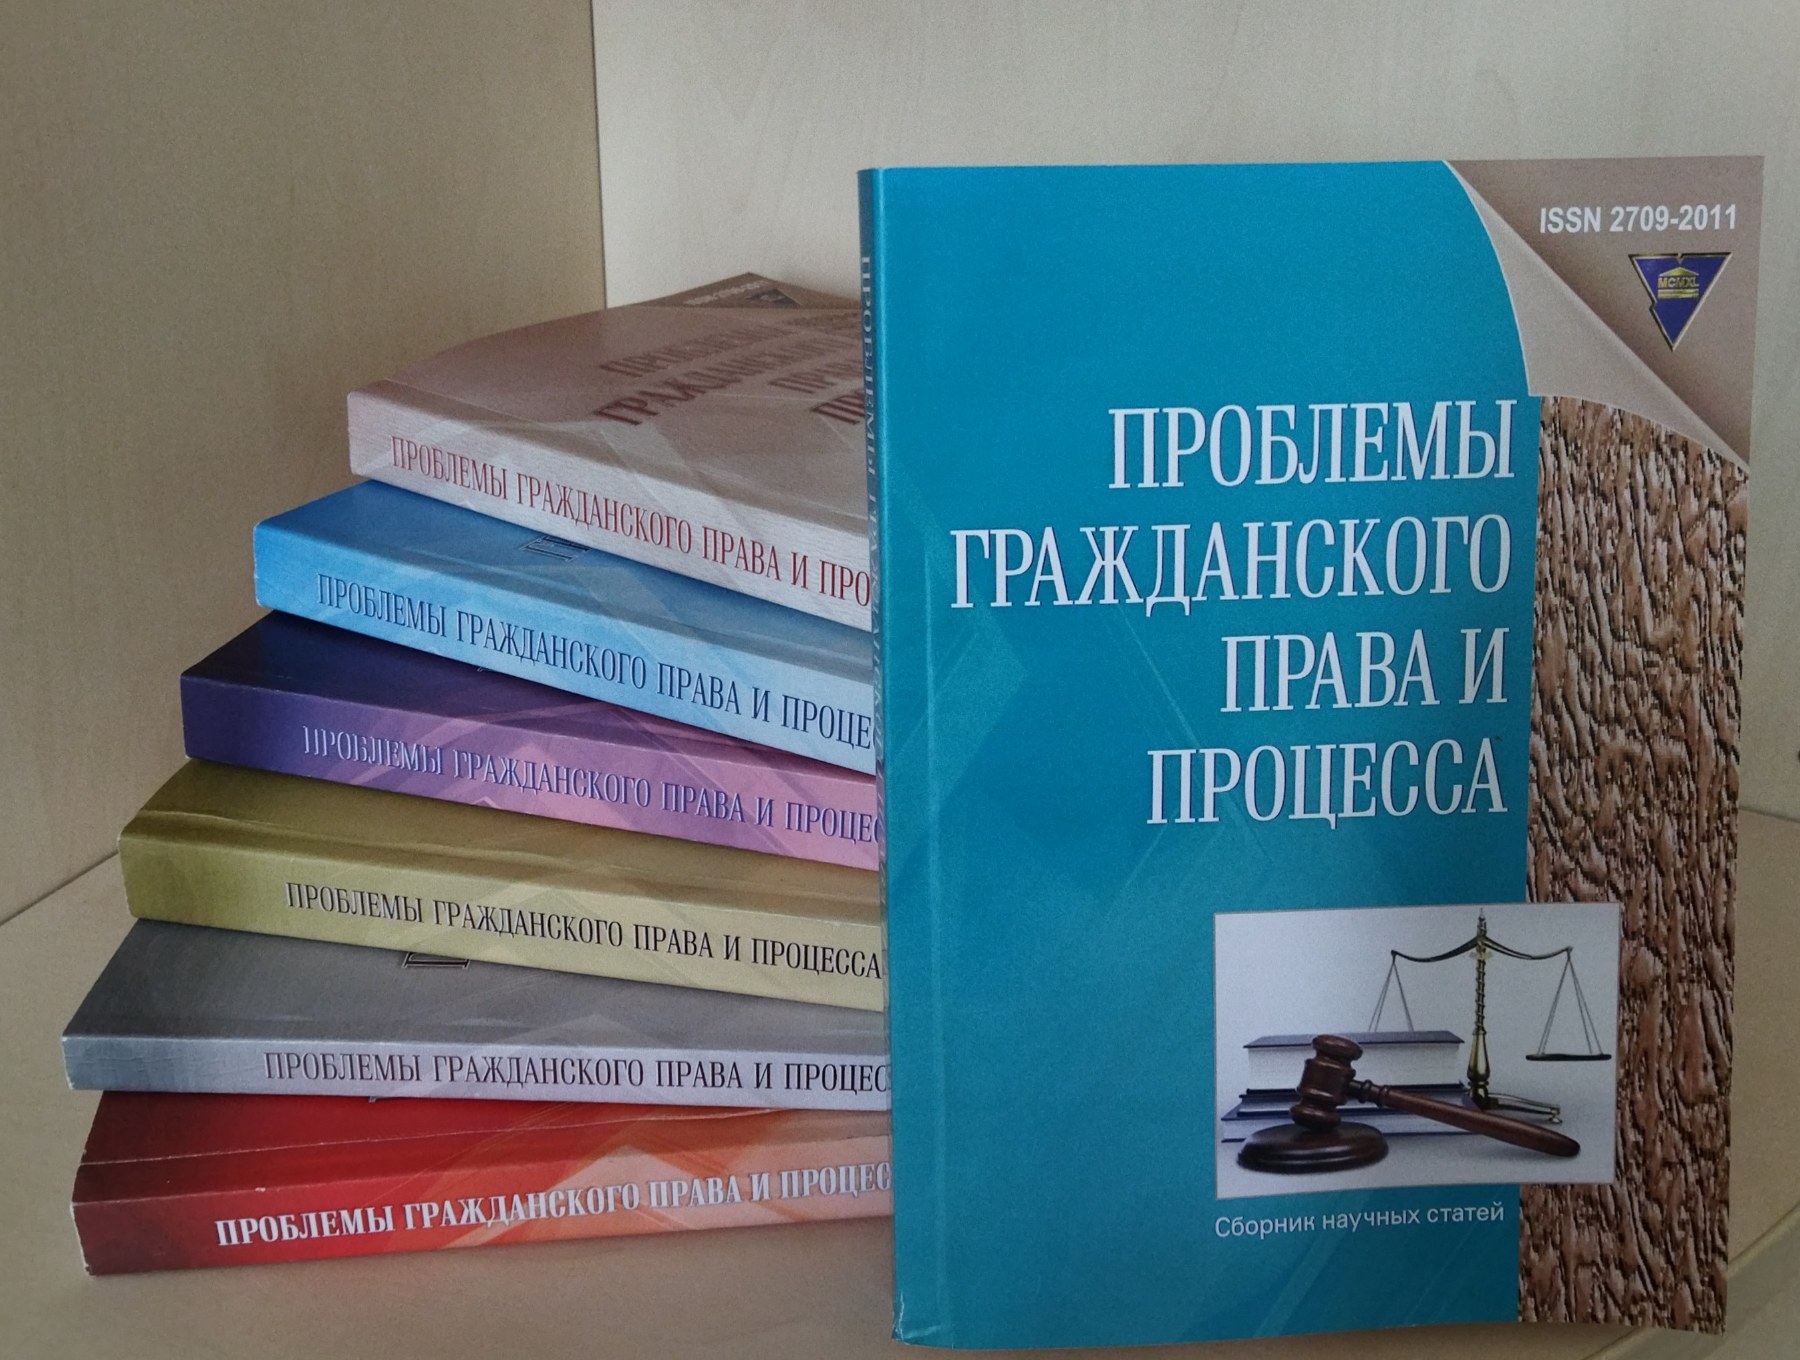 Новые подходы в развитии юридической науки: подготовлен сборник ВАК «Проблемы гражданского права и процесса»